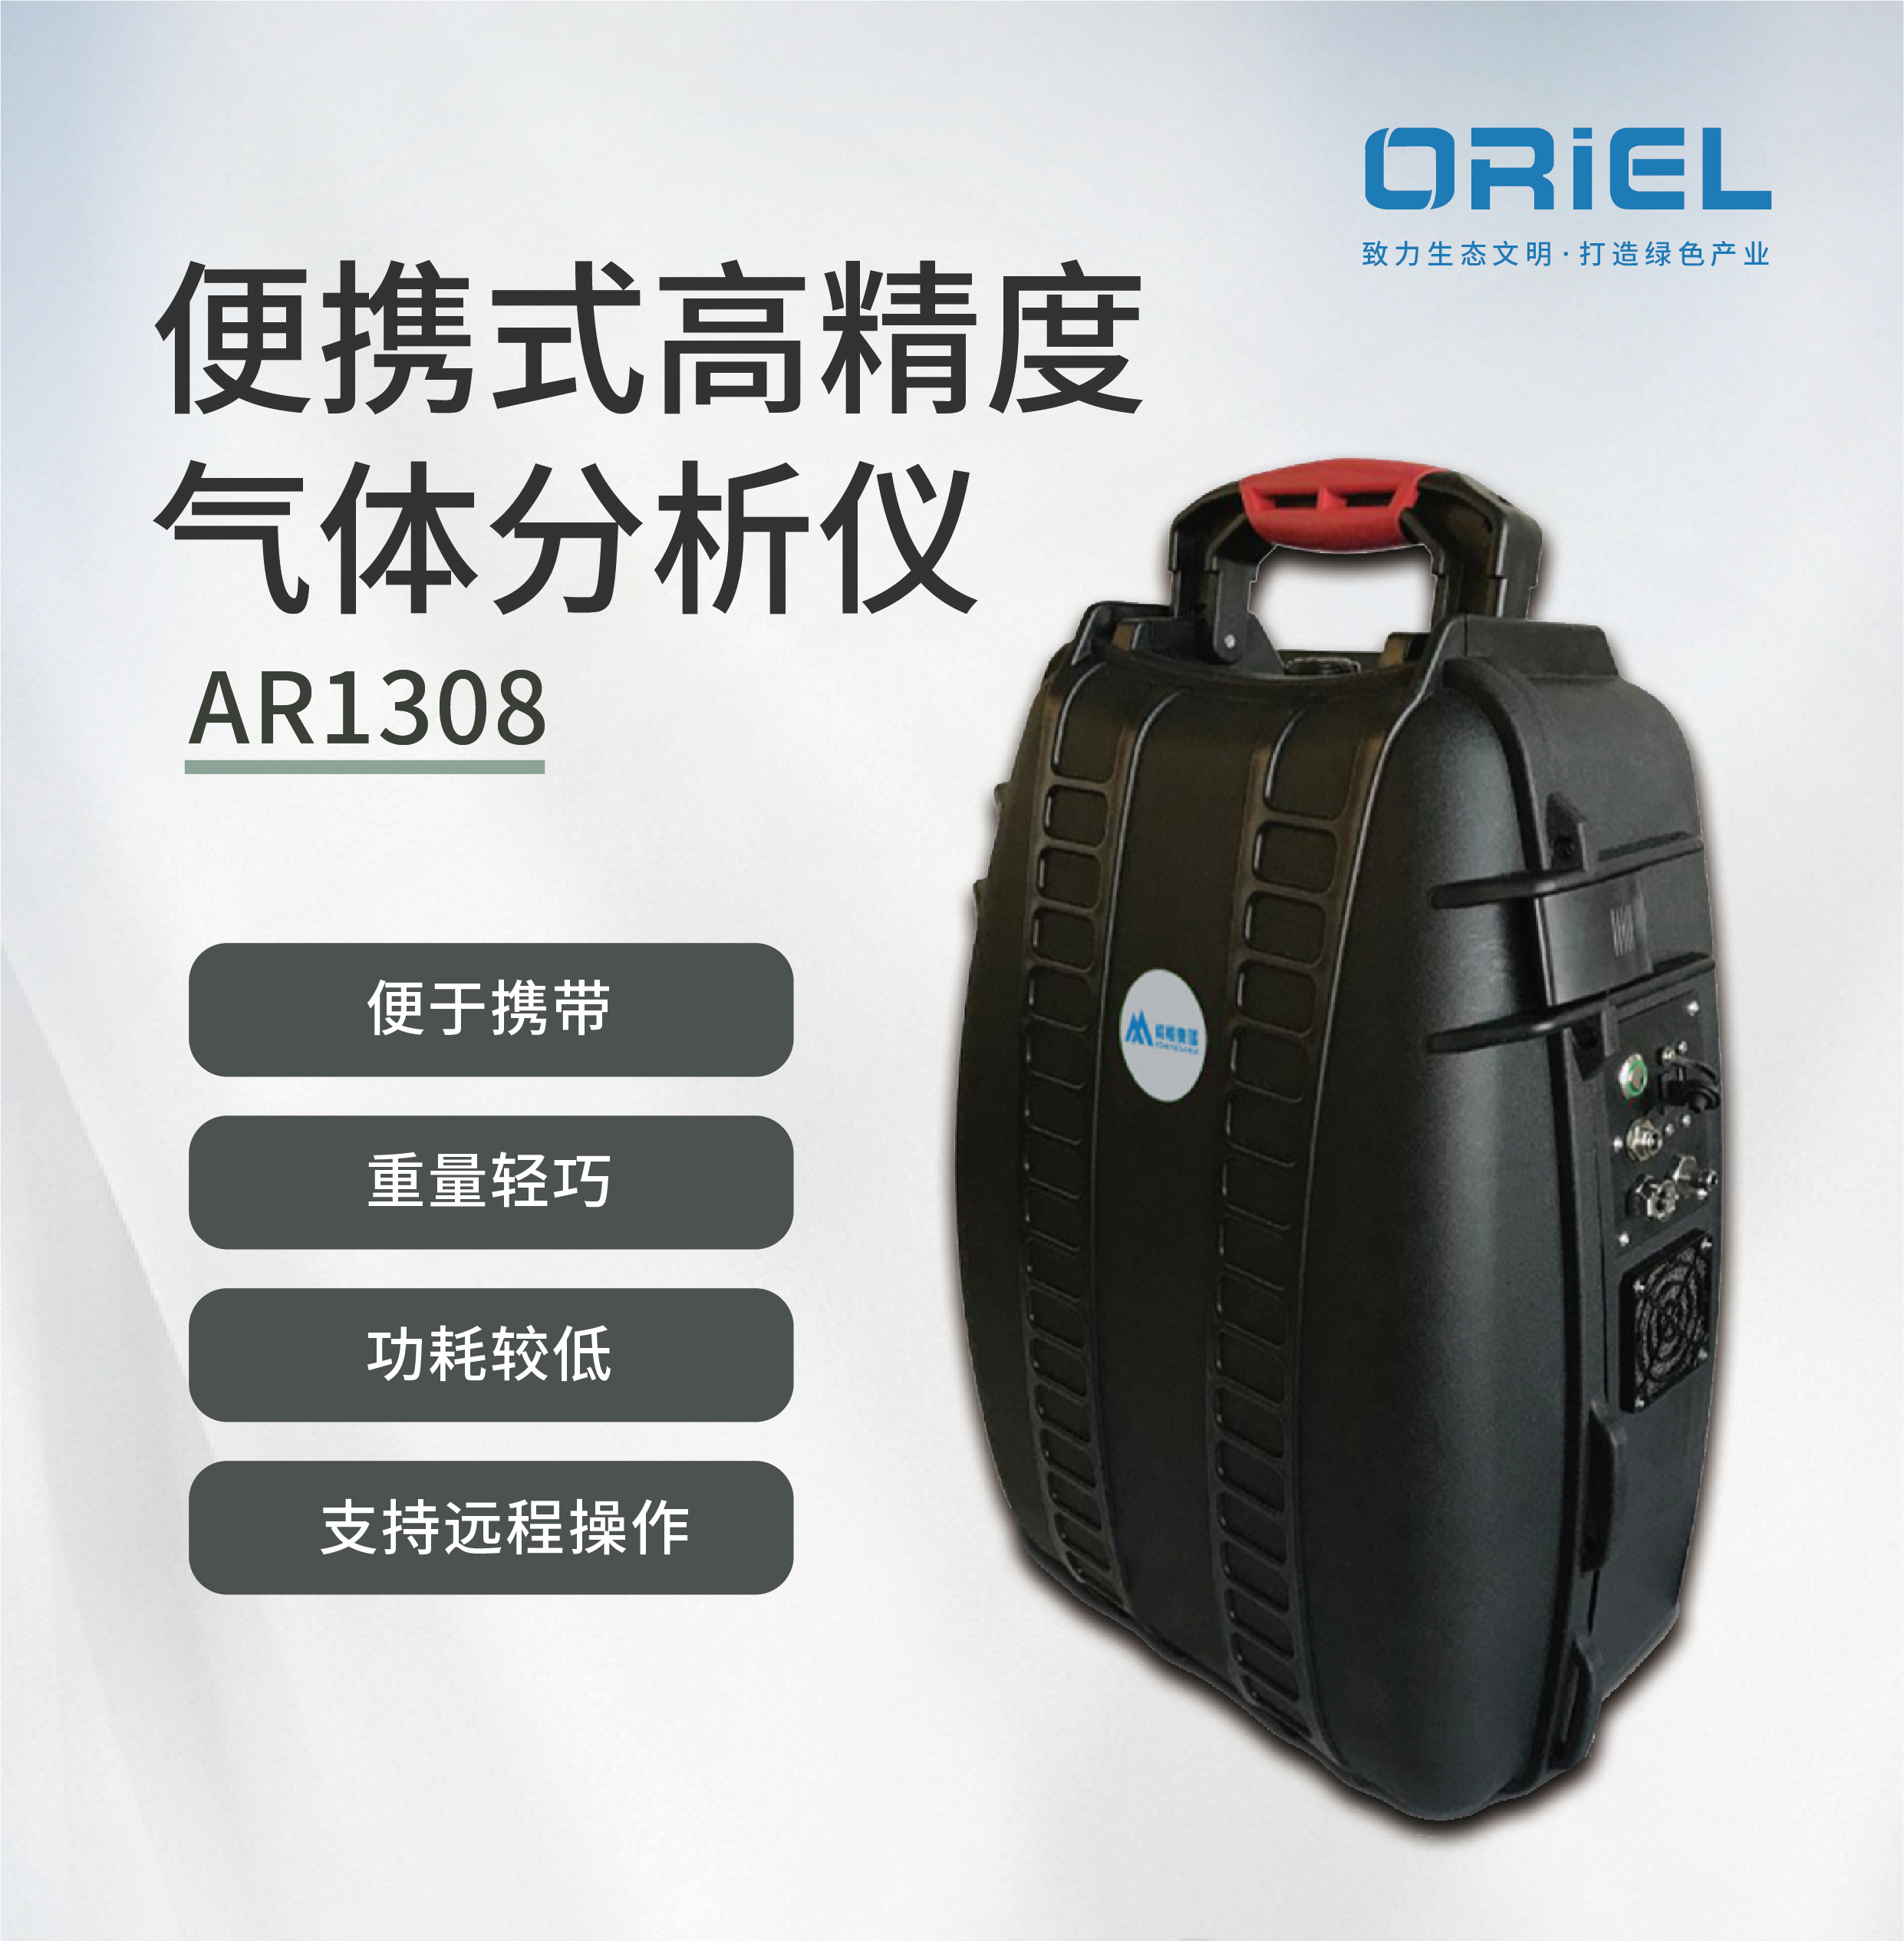 峰悦奥瑞AR1308 CH4+C2H6+H2O便携式高精度气体分析仪